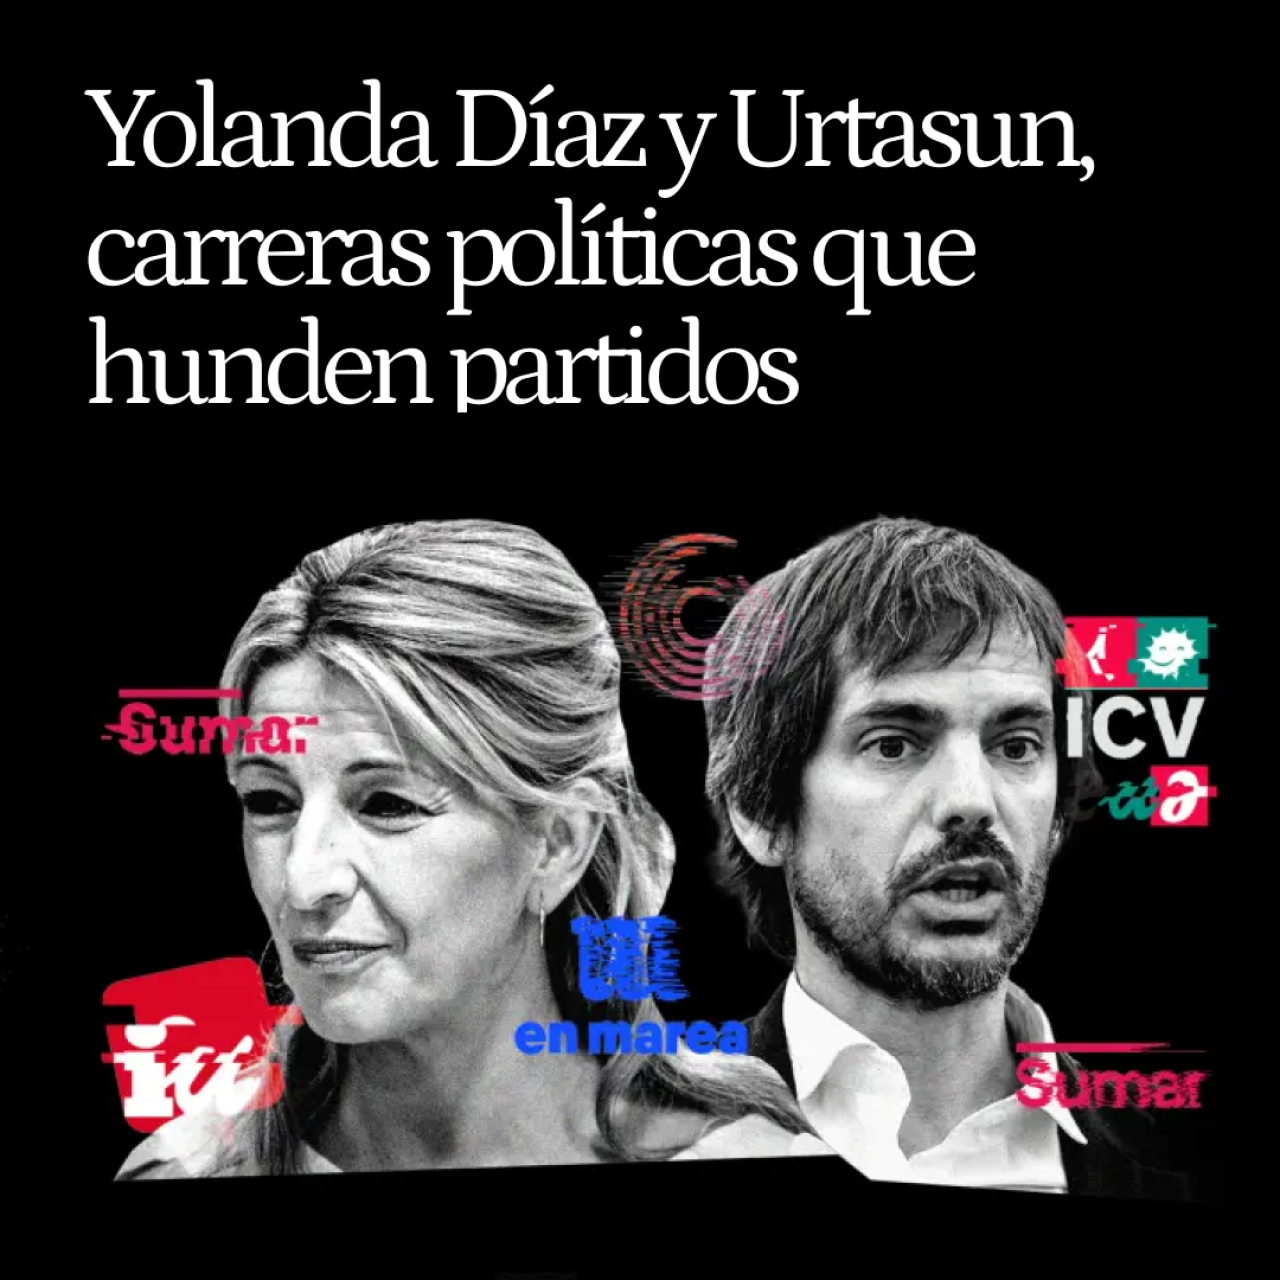 Yolanda Díaz ha hundido 4 partidos y Urtasun 3: los fracasos paralelos de los creadores de Sumar